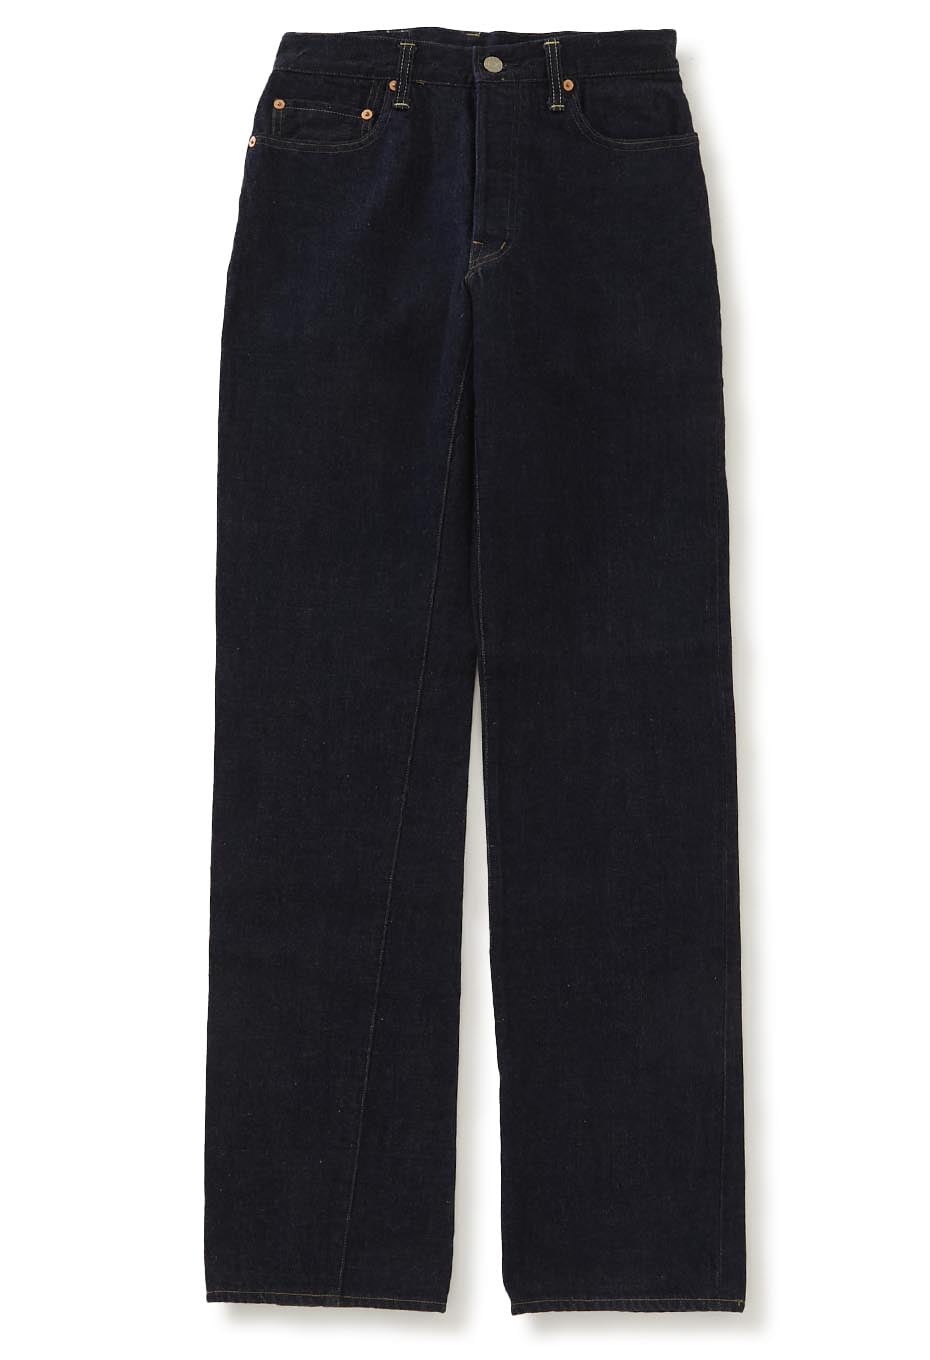 PP300 okra jeans